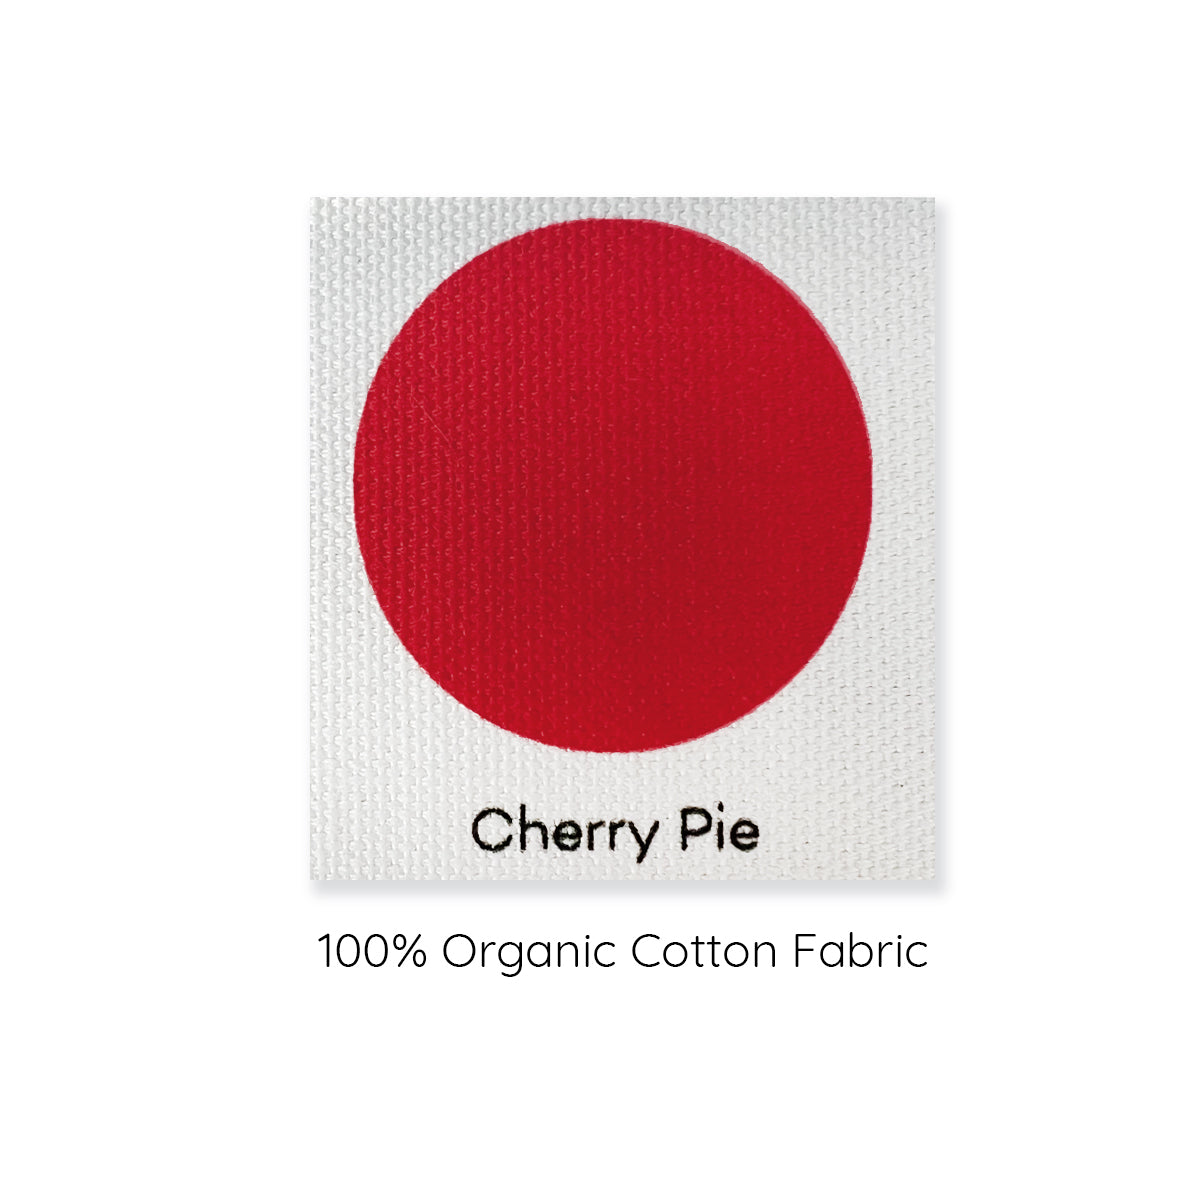 cherry pie colour swatch example 